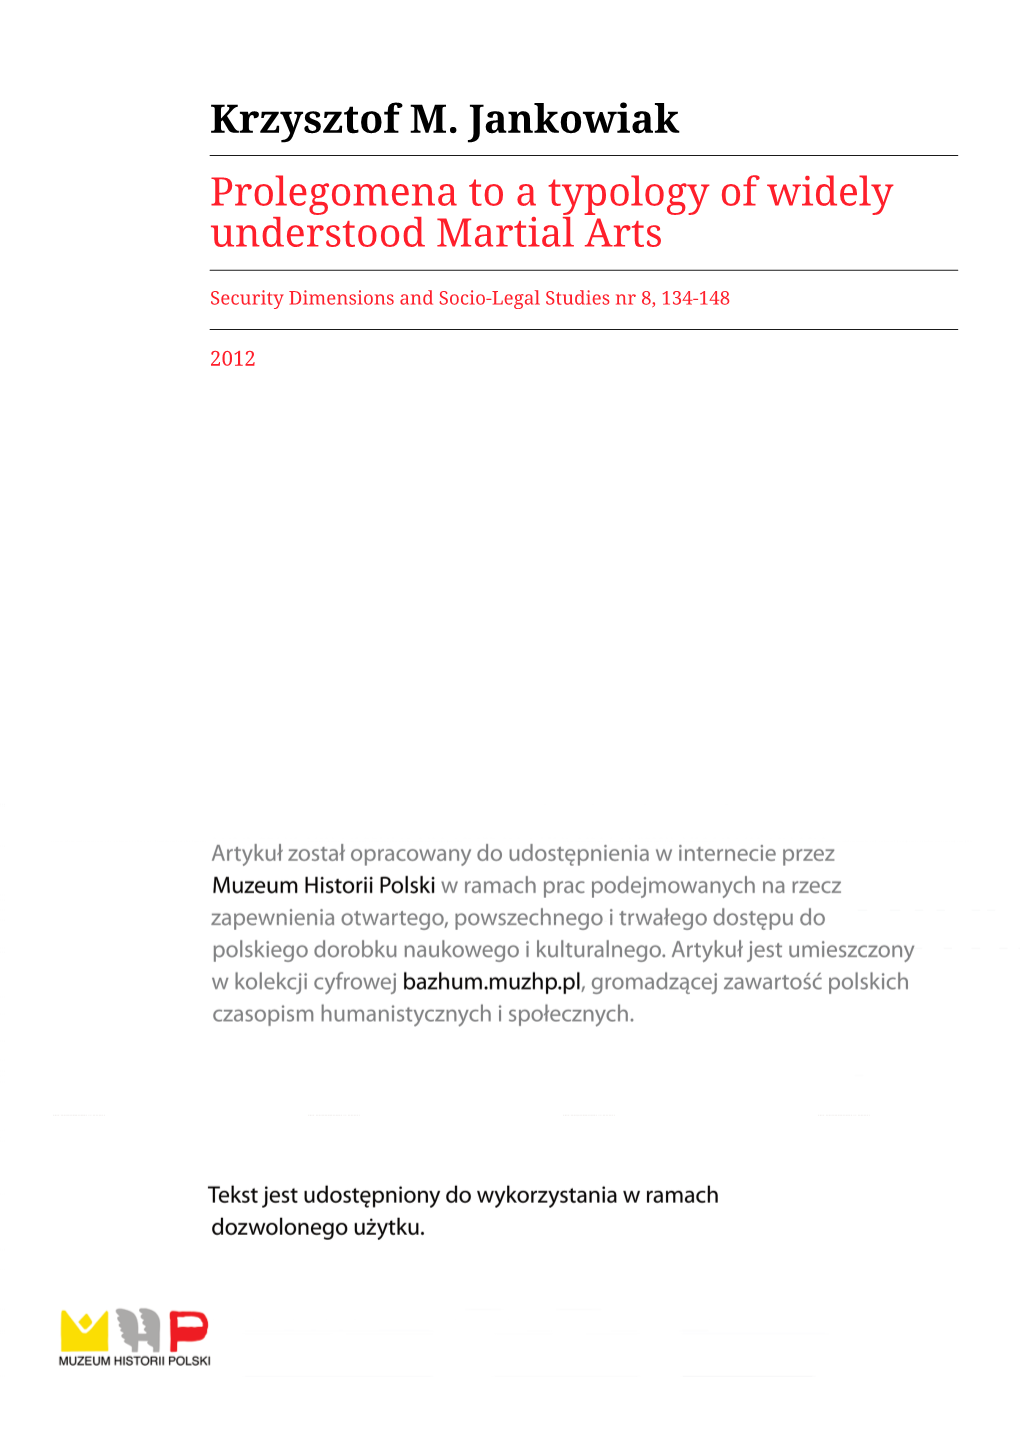 Krzysztof M. Jankowiak Prolegomena to a Typology of Widely Understood Martial Arts